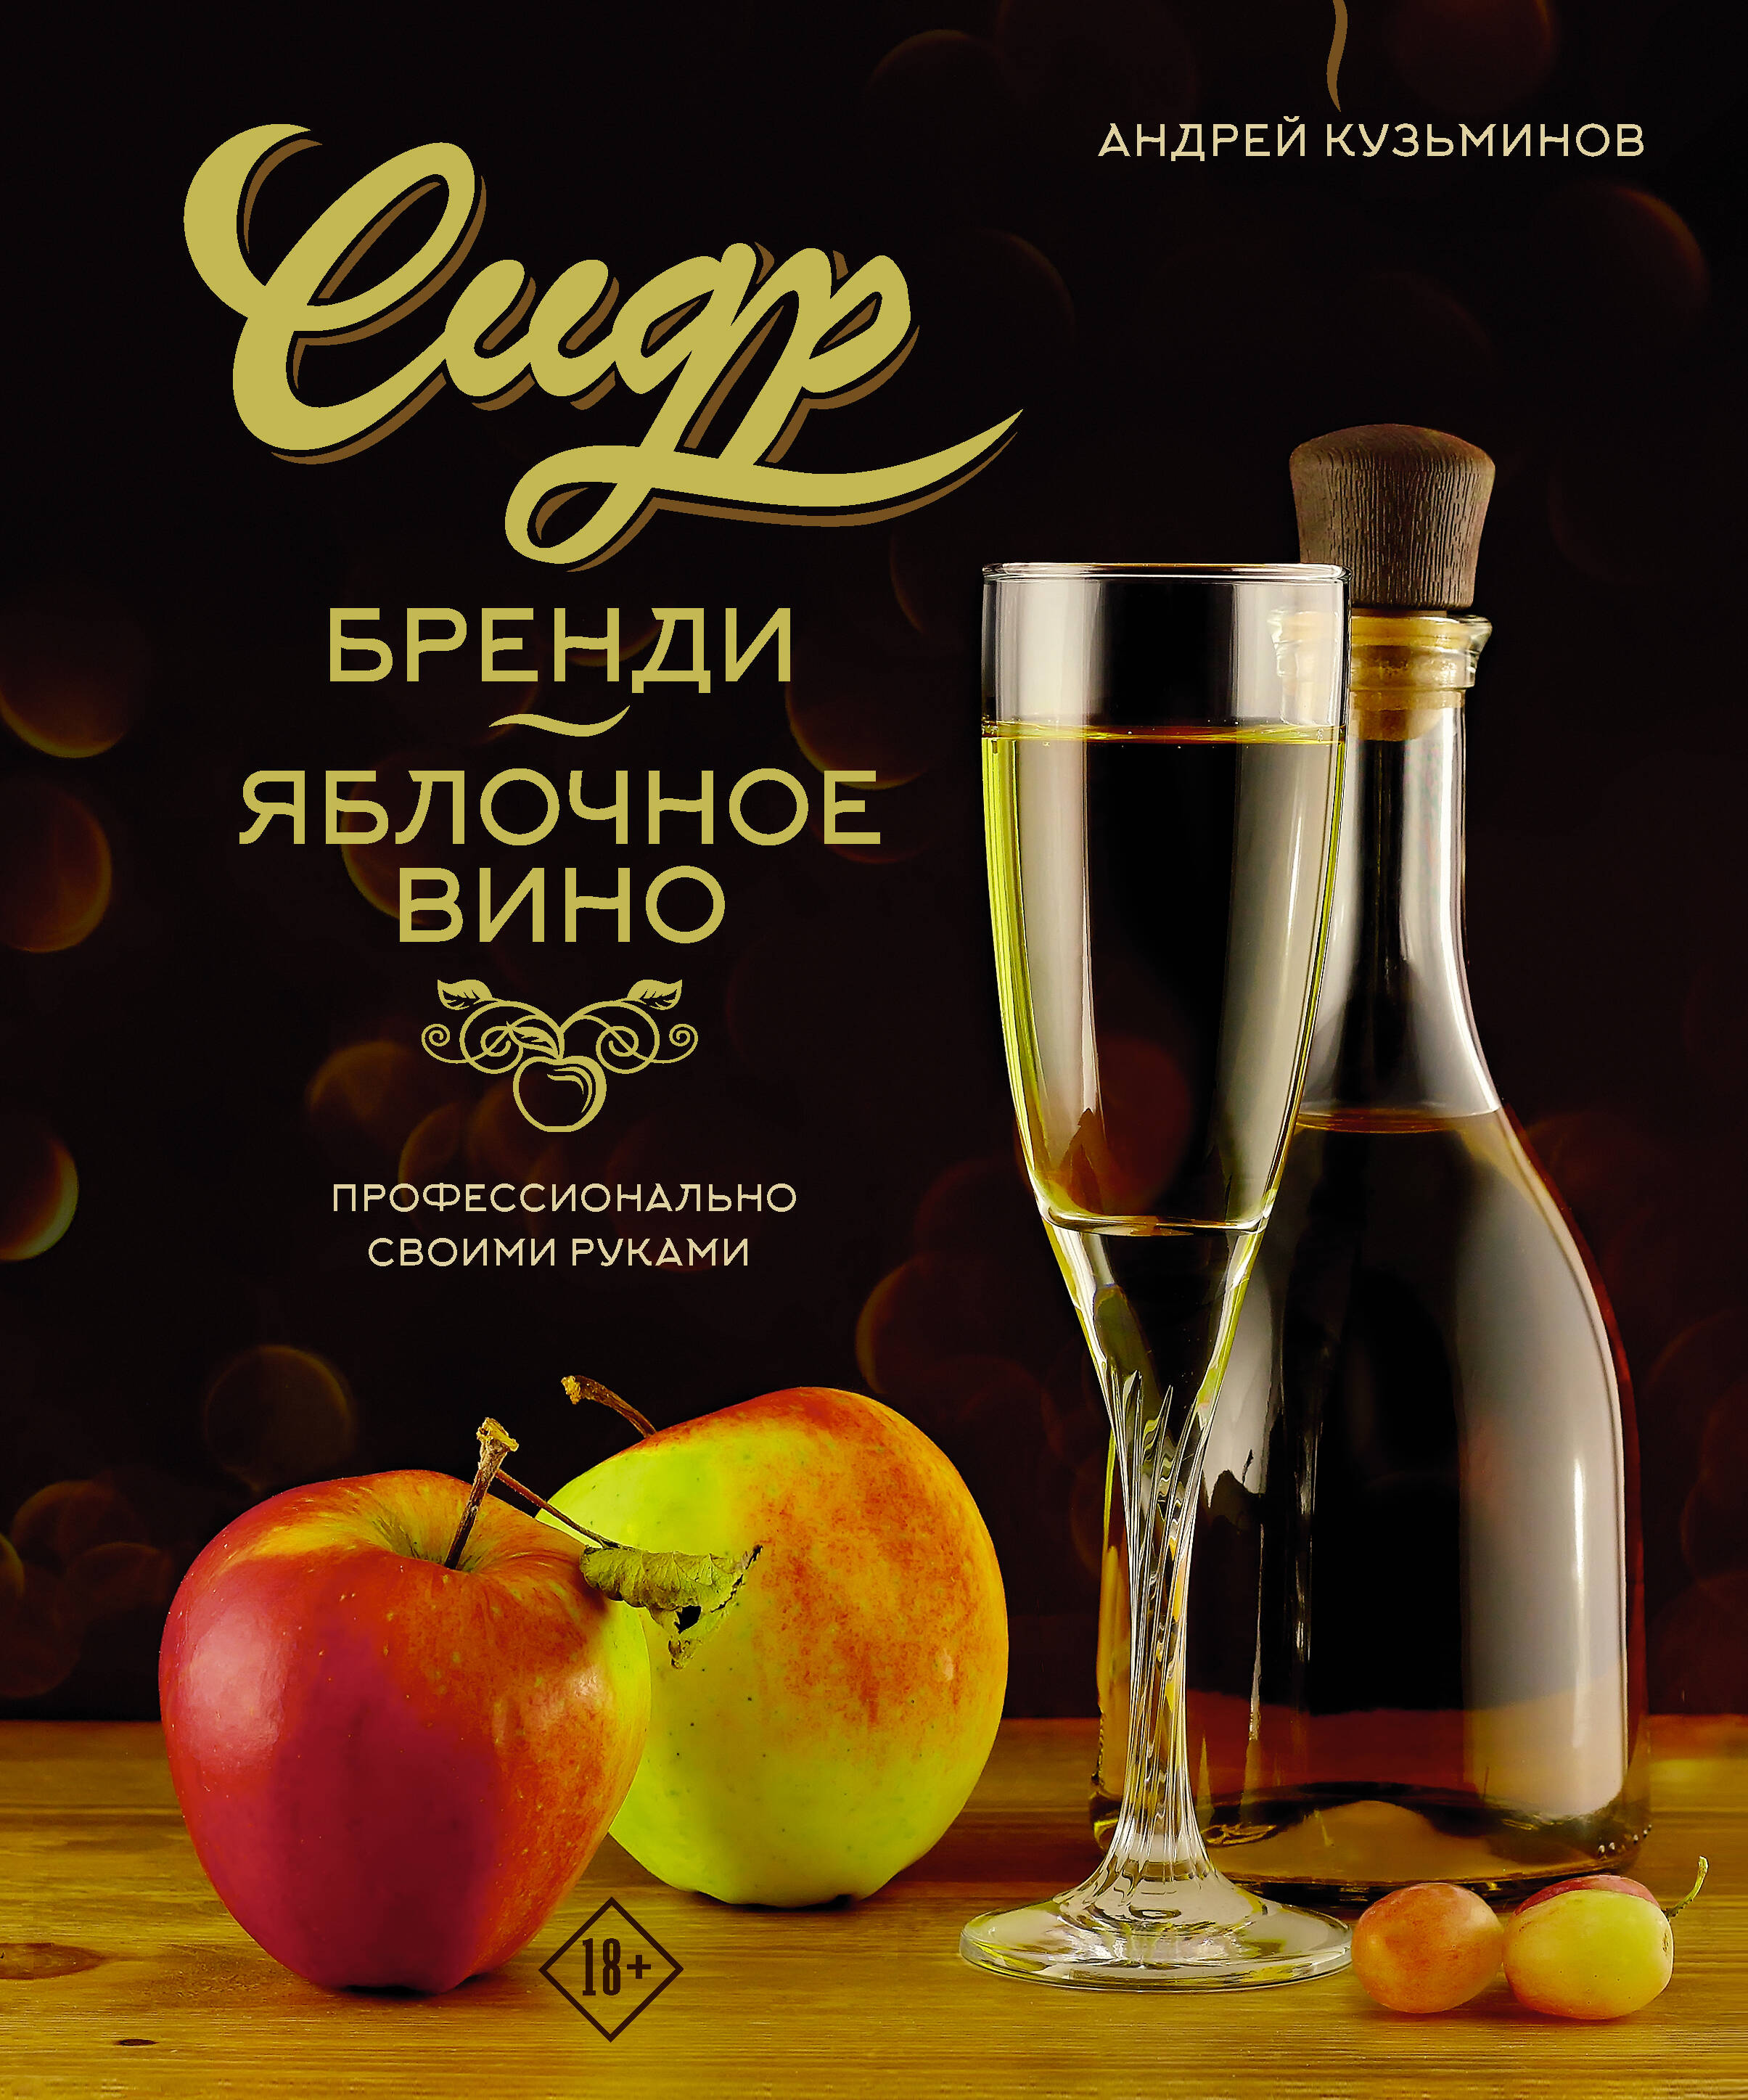 Кузьминов Андрей Игоревич Сидр, бренди, яблочное вино. Профессионально. Своими руками андрей кузьминов сидр бренди яблочное вино